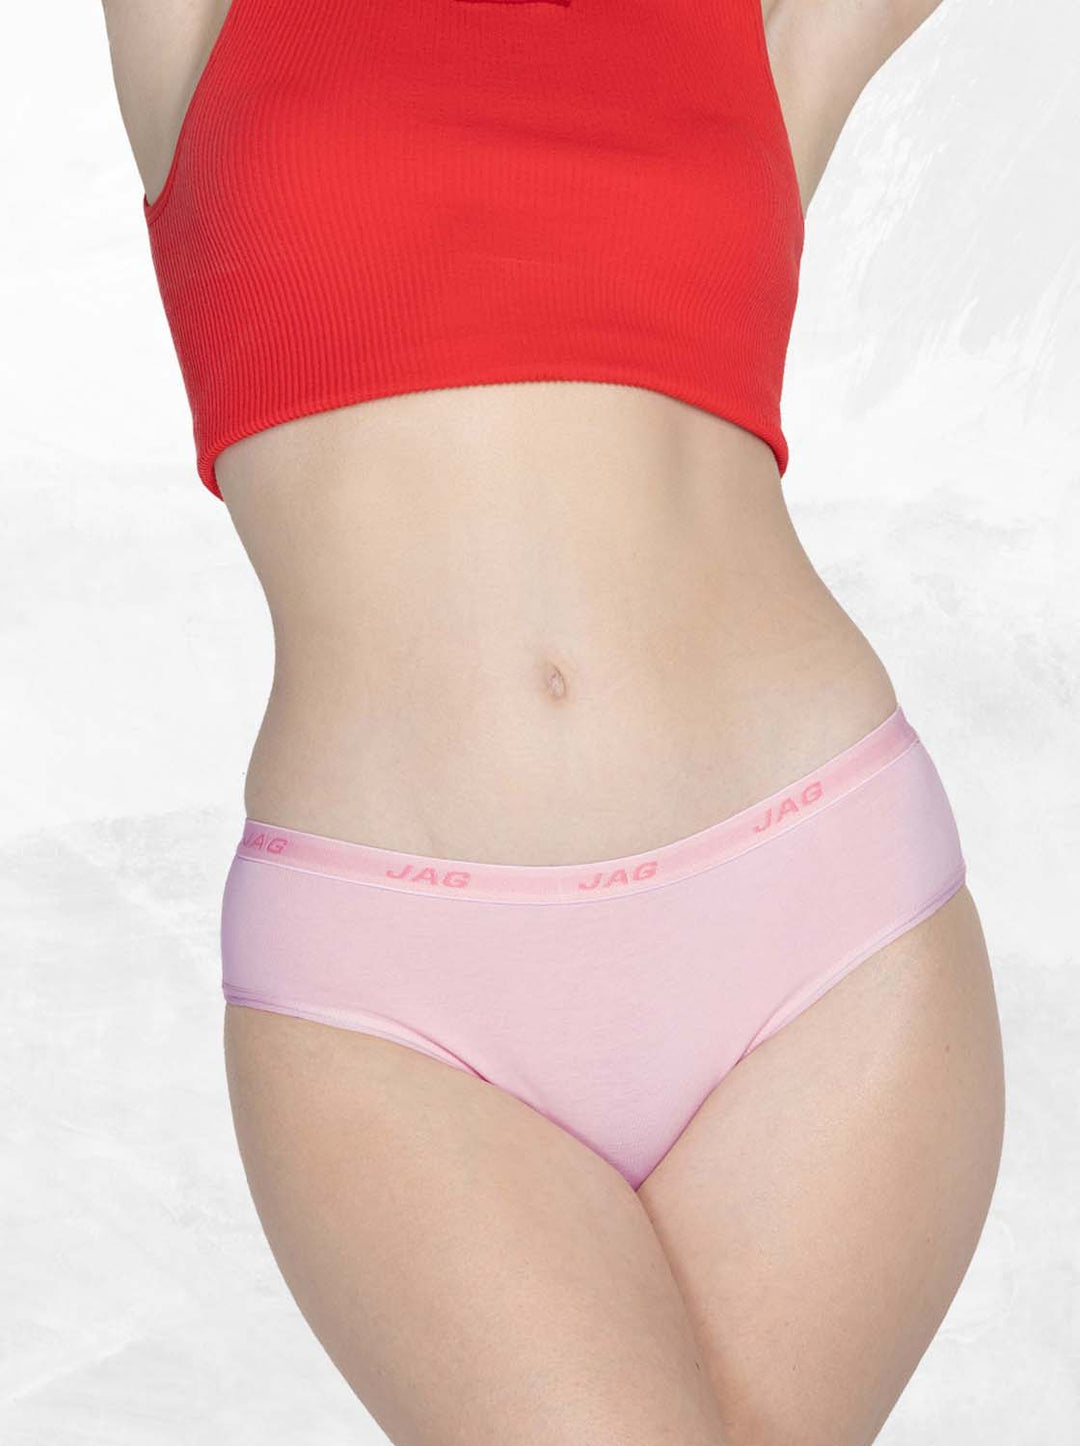 Jag Women's Underwear Cotton Stretch Bikini 3 in 1 in Assorted Colors